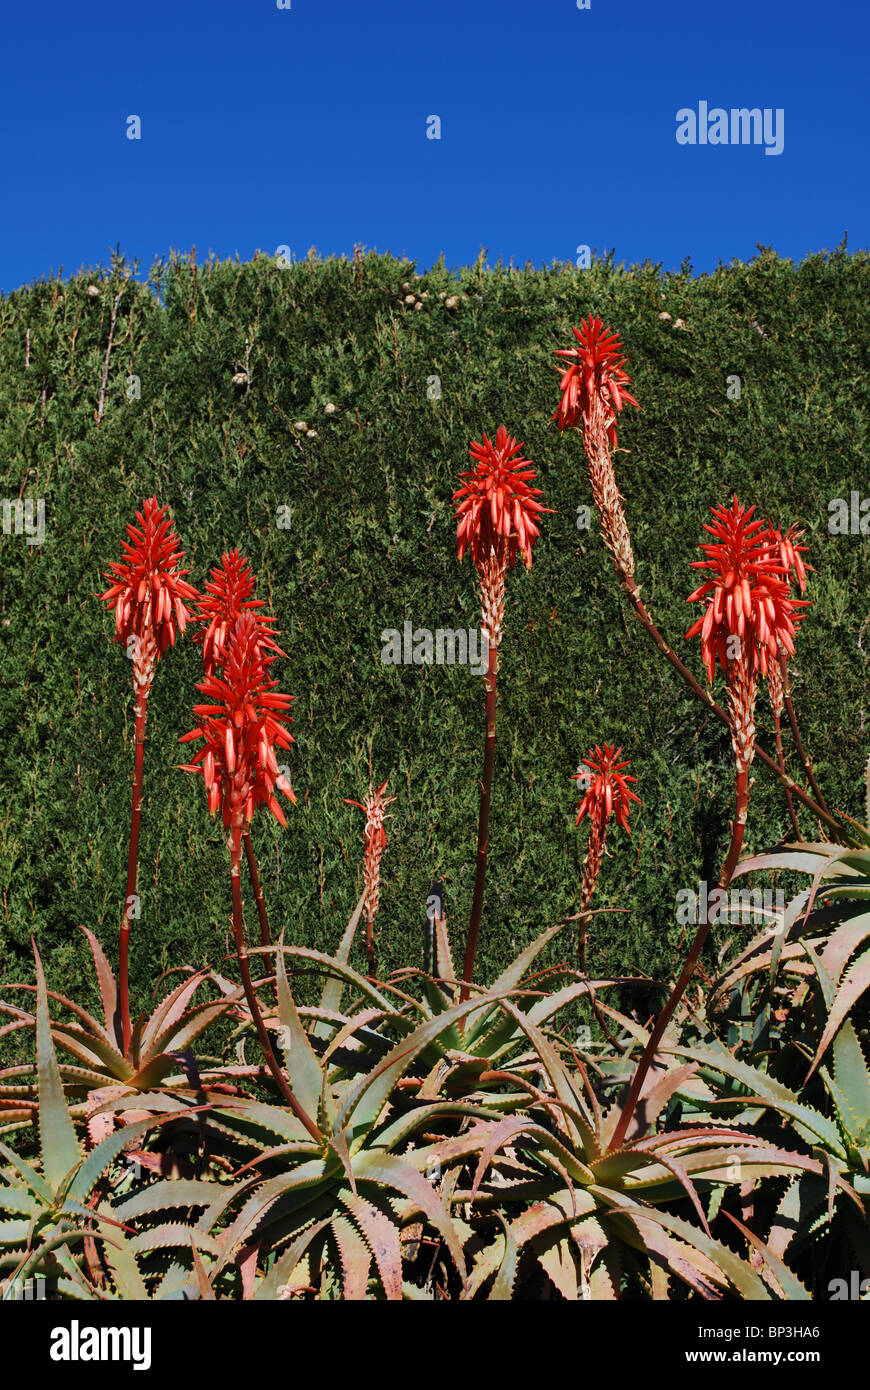 L'Aloe arborescens variegata, Sitio de Calahonda, Mijas Costa, Costa del Sol, la province de Malaga, Andalousie, Espagne, Europe de l'Ouest. Banque D'Images